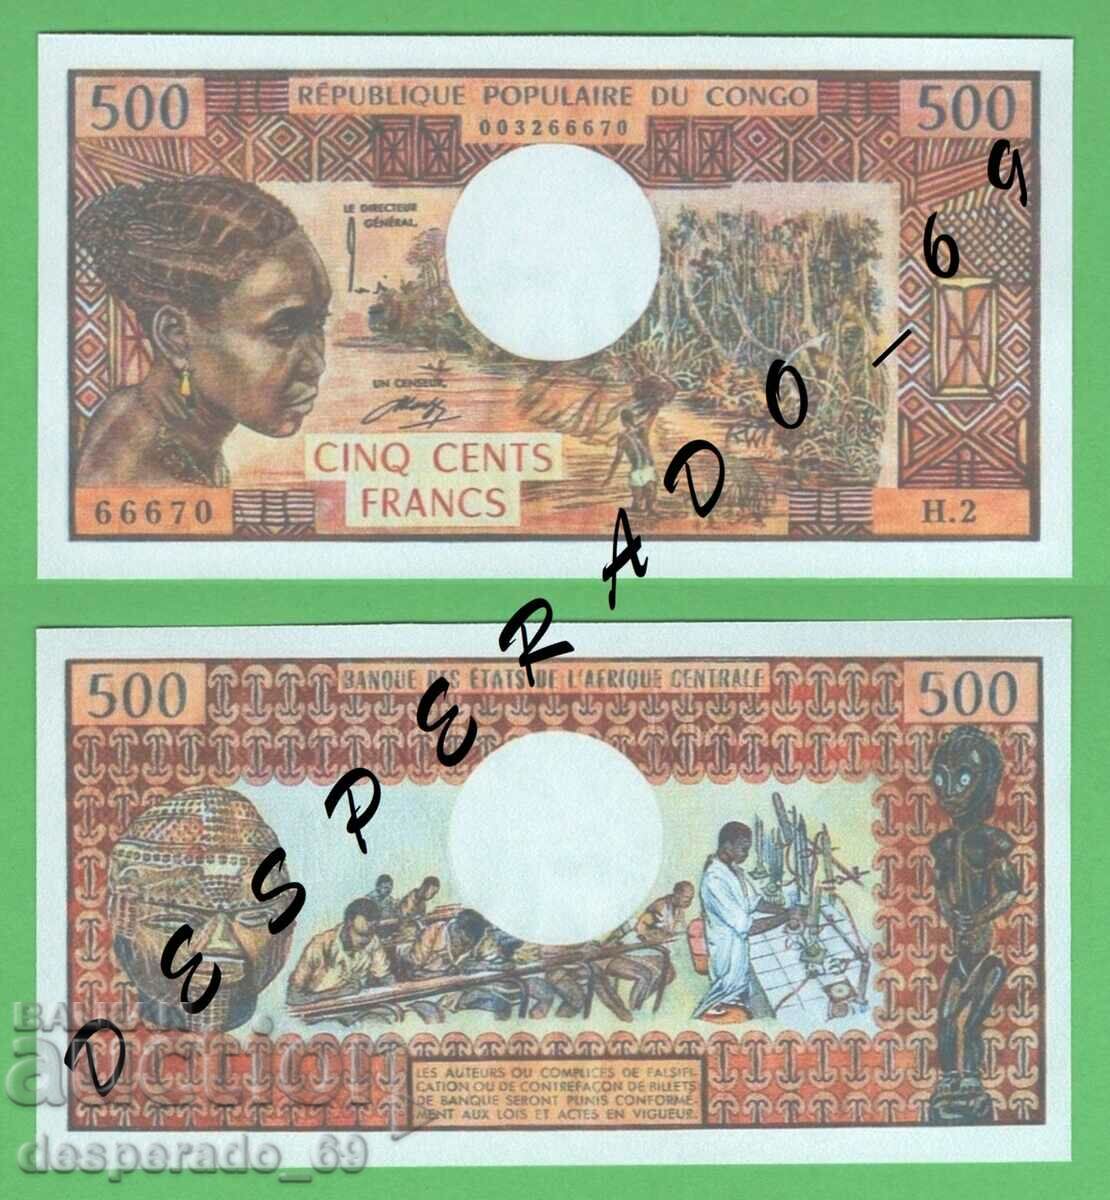 (¯`'•.¸(αναπαραγωγή) ΚΟΝΓΟ 500 φράγκα 1974 UNC¸.•'´¯)